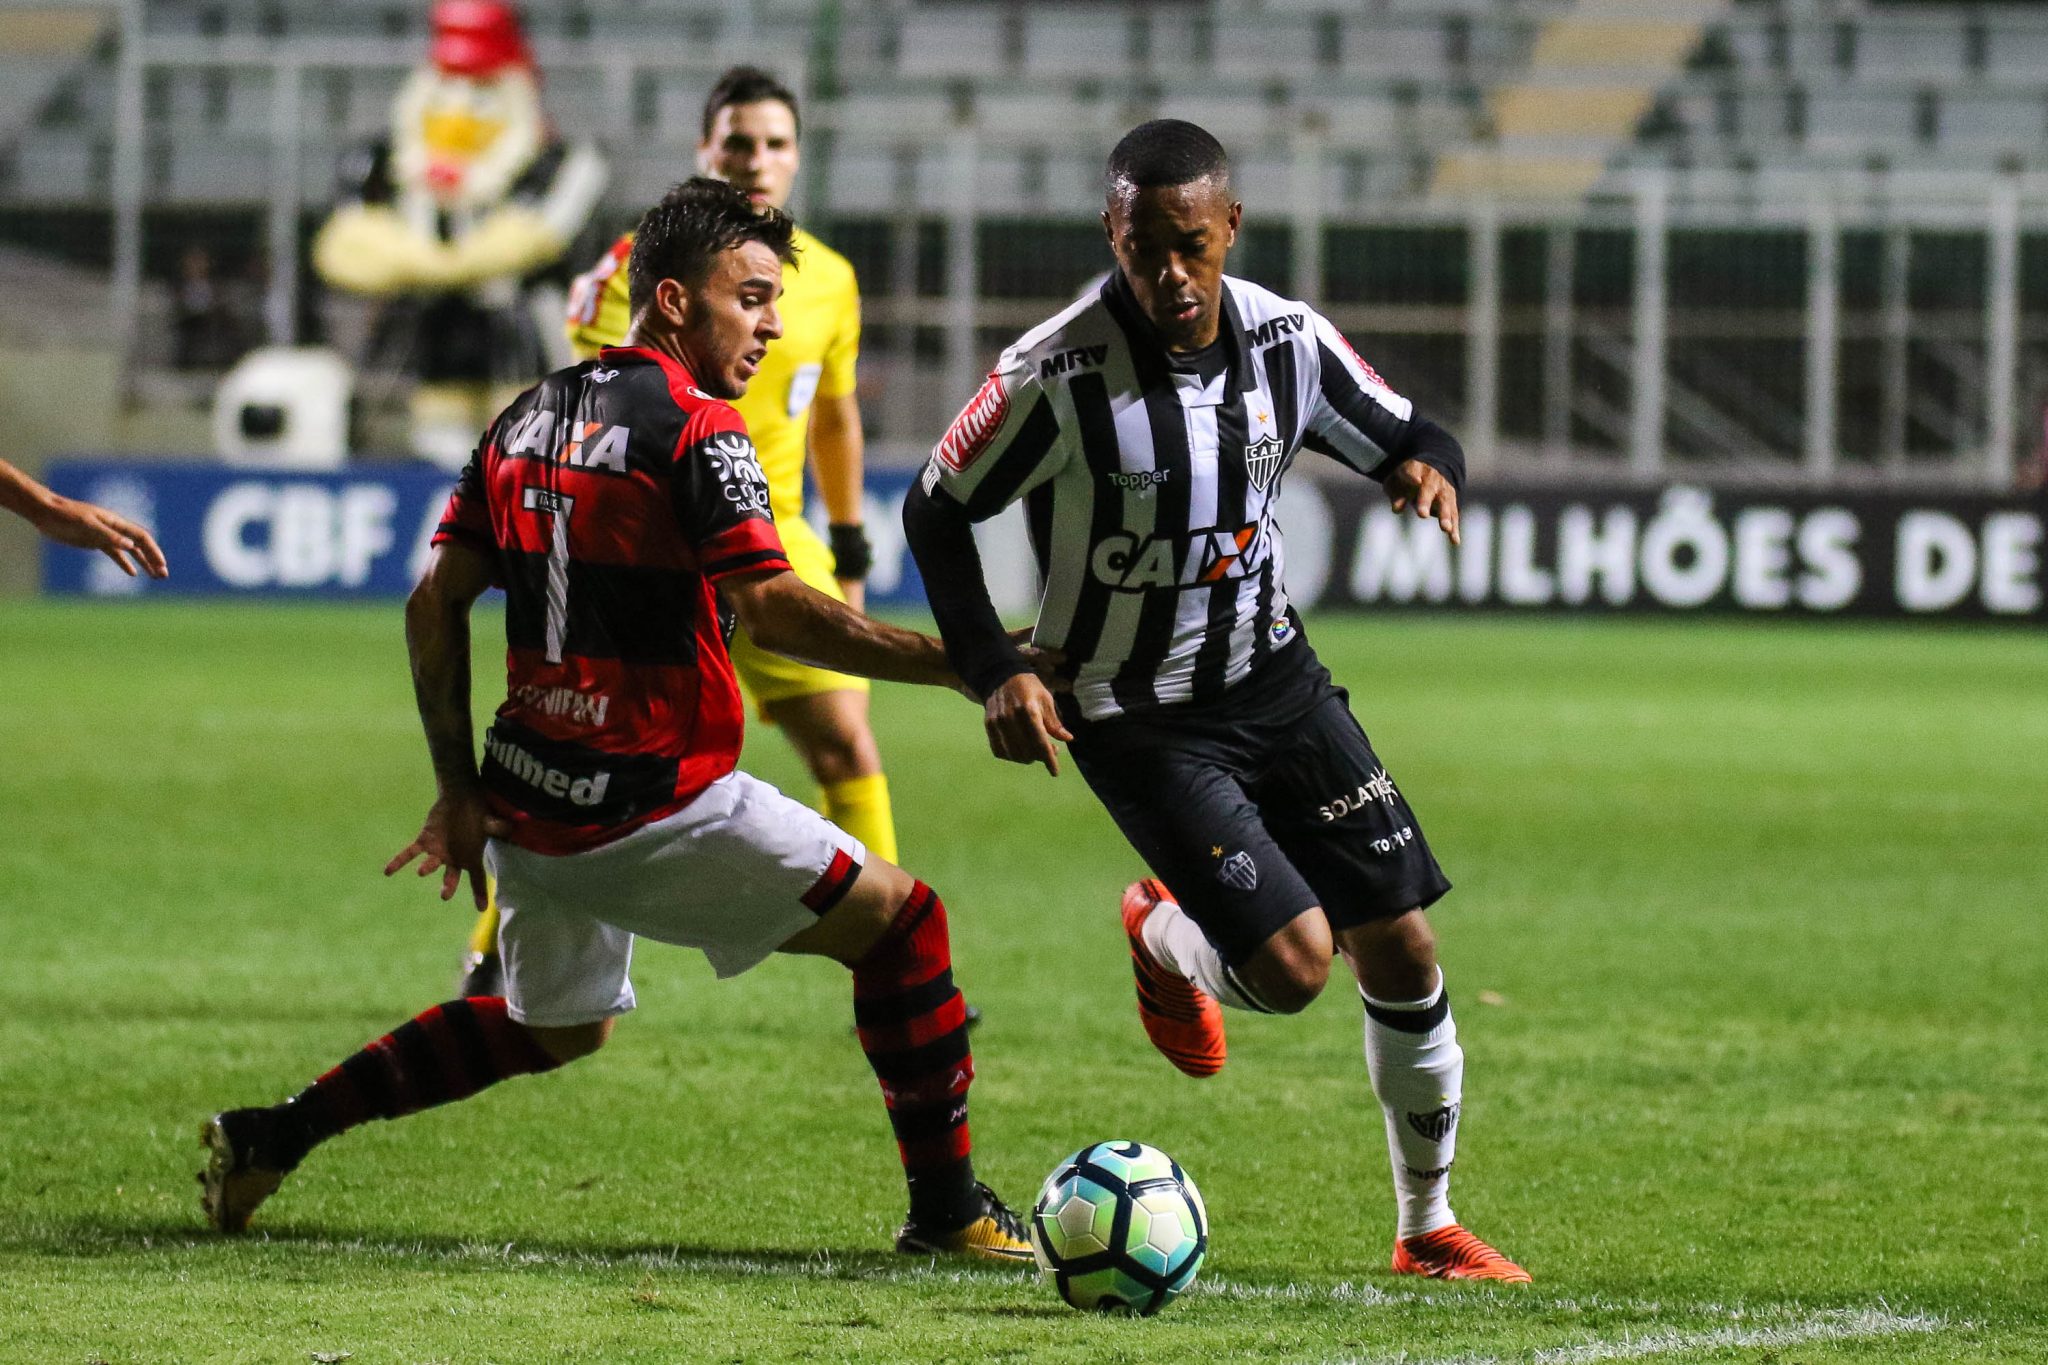 38264072212 7e2259443b o - Galo 3 x 2 Dragão - Em jogo cheio de gols, Atlético vira sobre o xará de Goiás